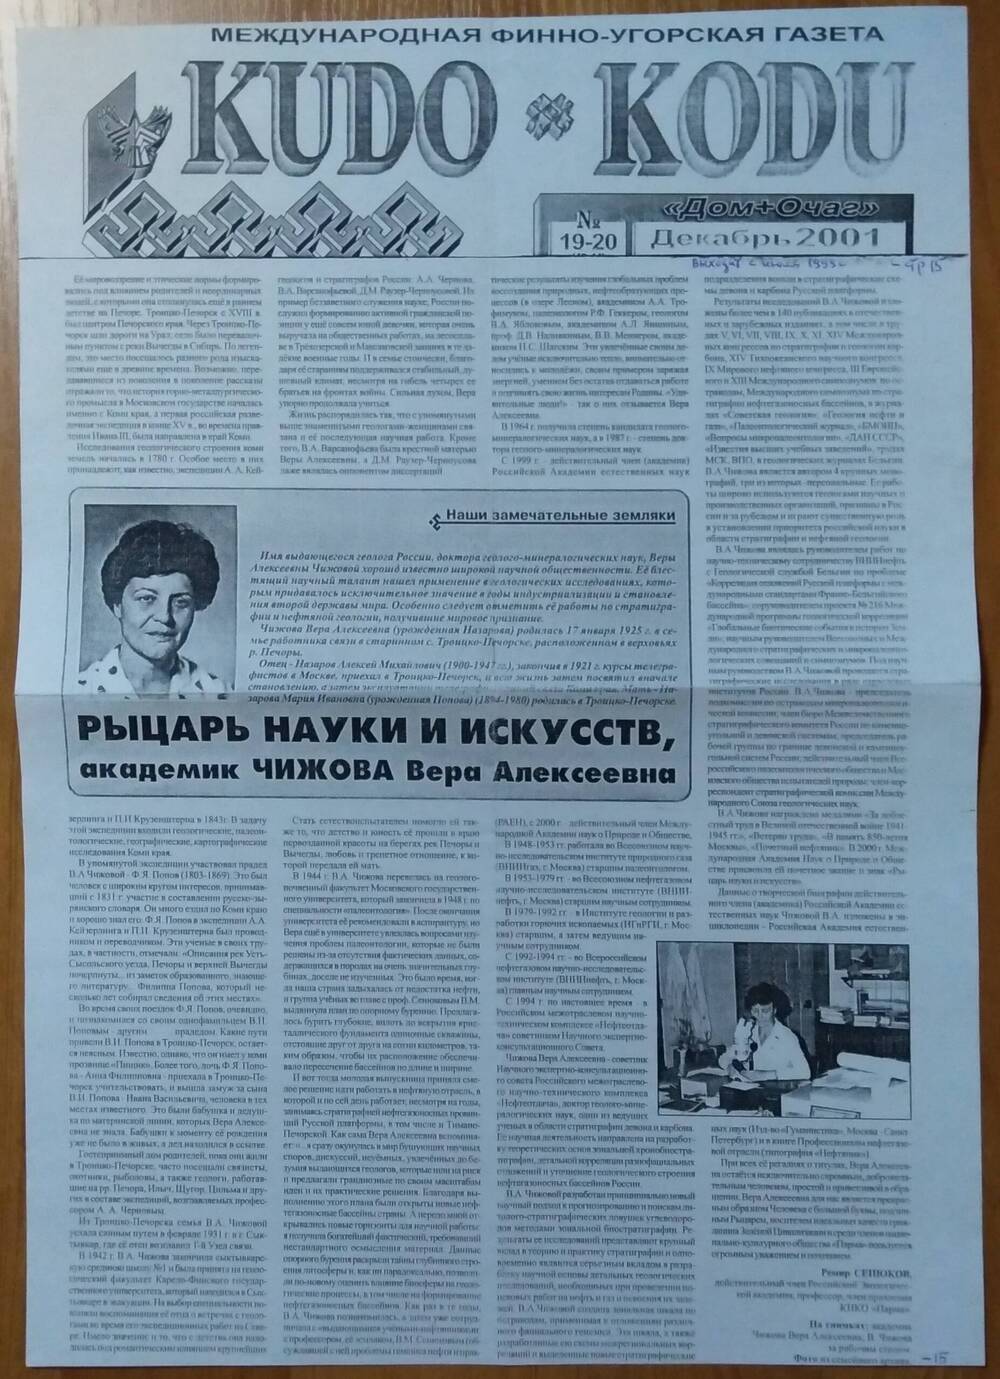 Ксерокопия Страница газеты KUDO KODU №19-20 за декабрь 2001 г.